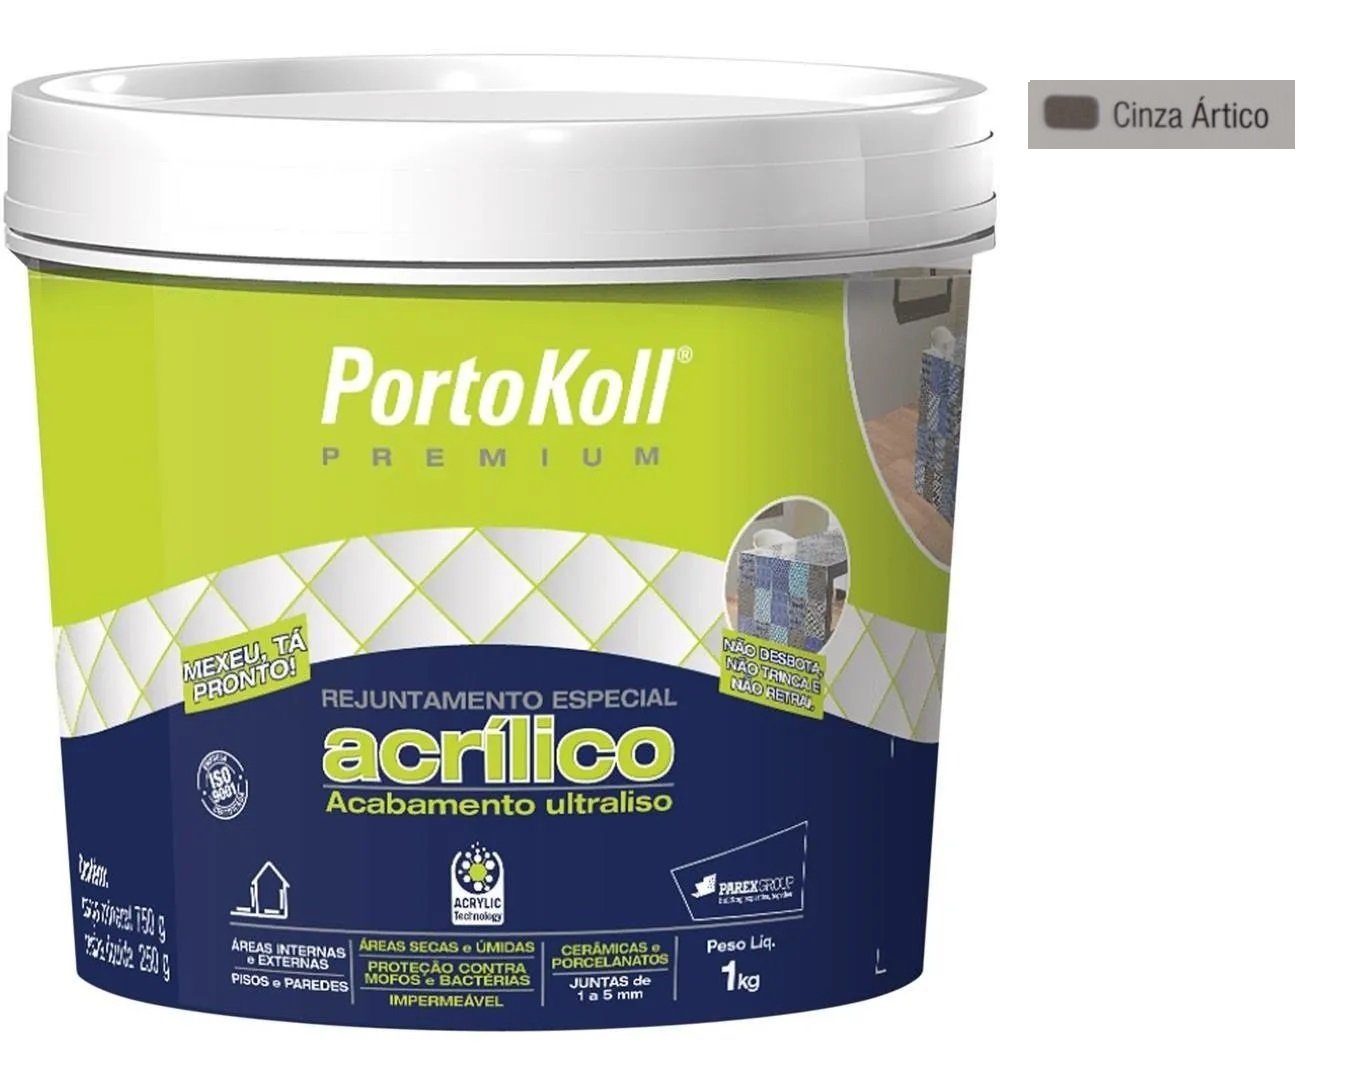 Rejunte Acrílico Portokoll Premium 1kg - CINZA ÁRTICO - 1